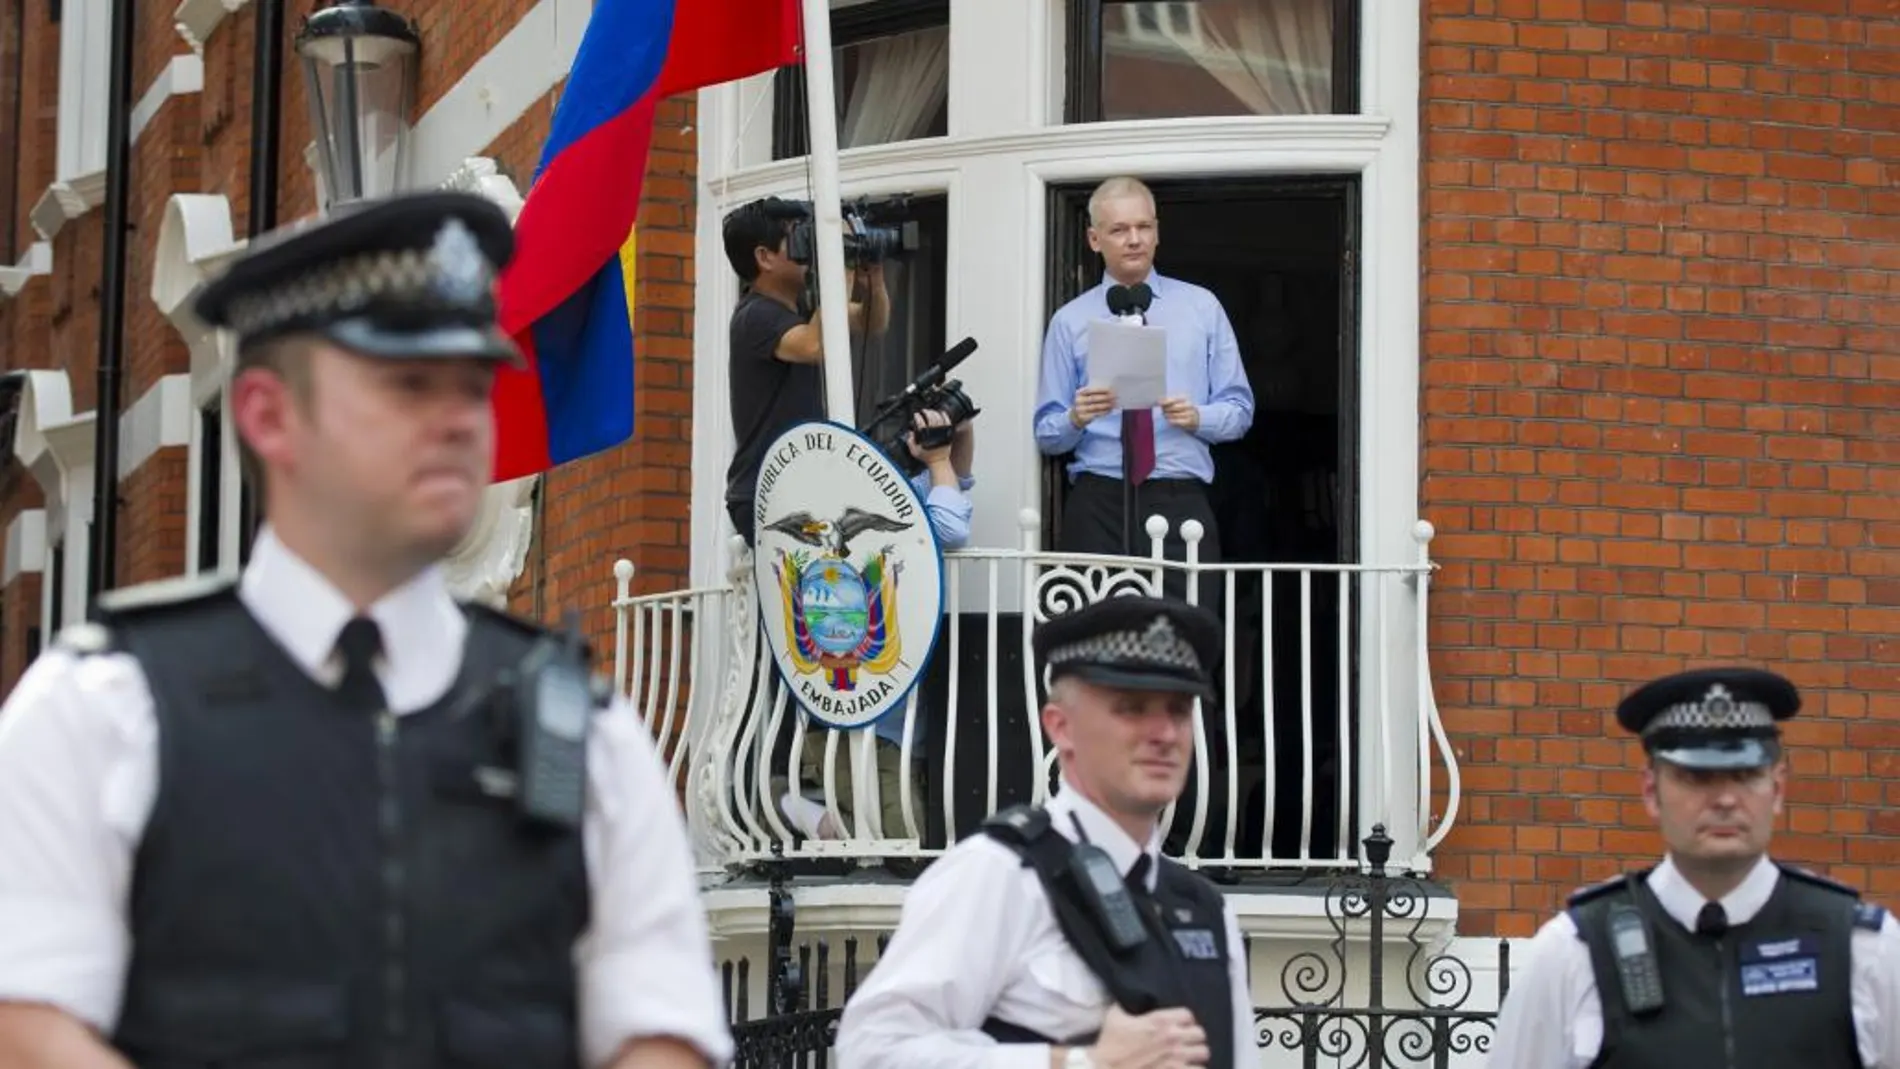 Fotografía de archivo de Julian Assangedurante una rueda de prensa desde el balcón de la embajada de Ecuador en Londres